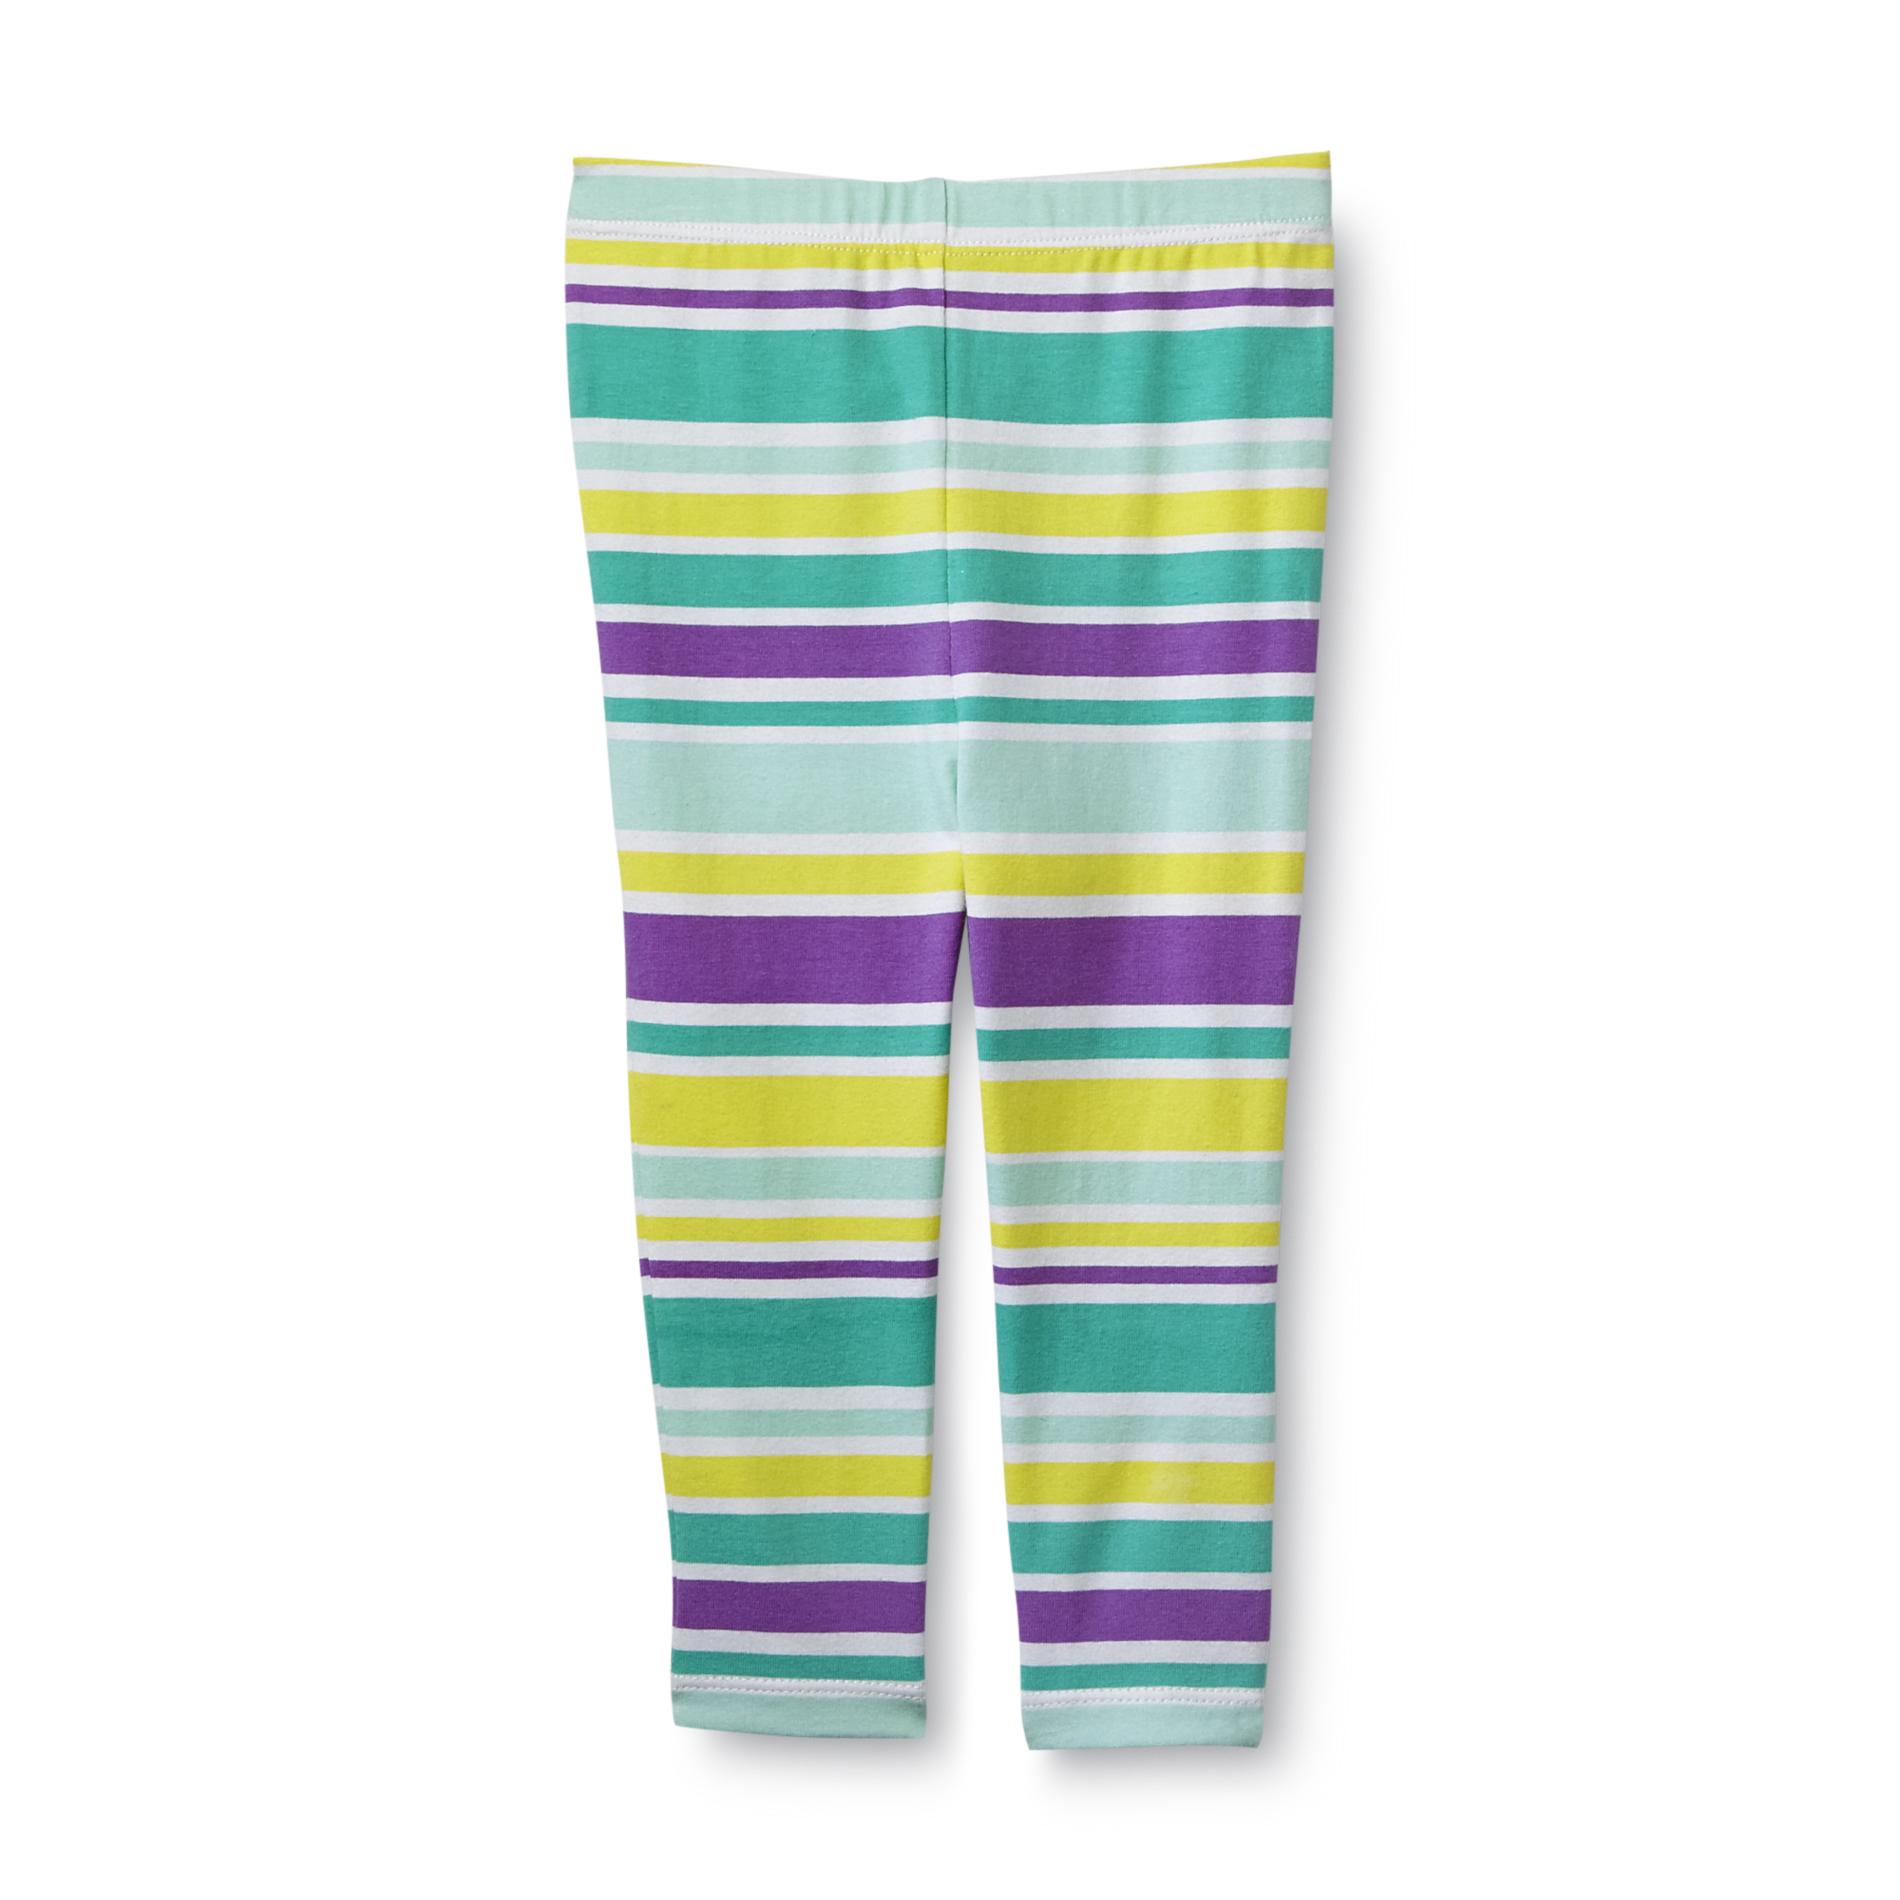 Toughskins Infant & Toddler Girl's Leggings - Stripes